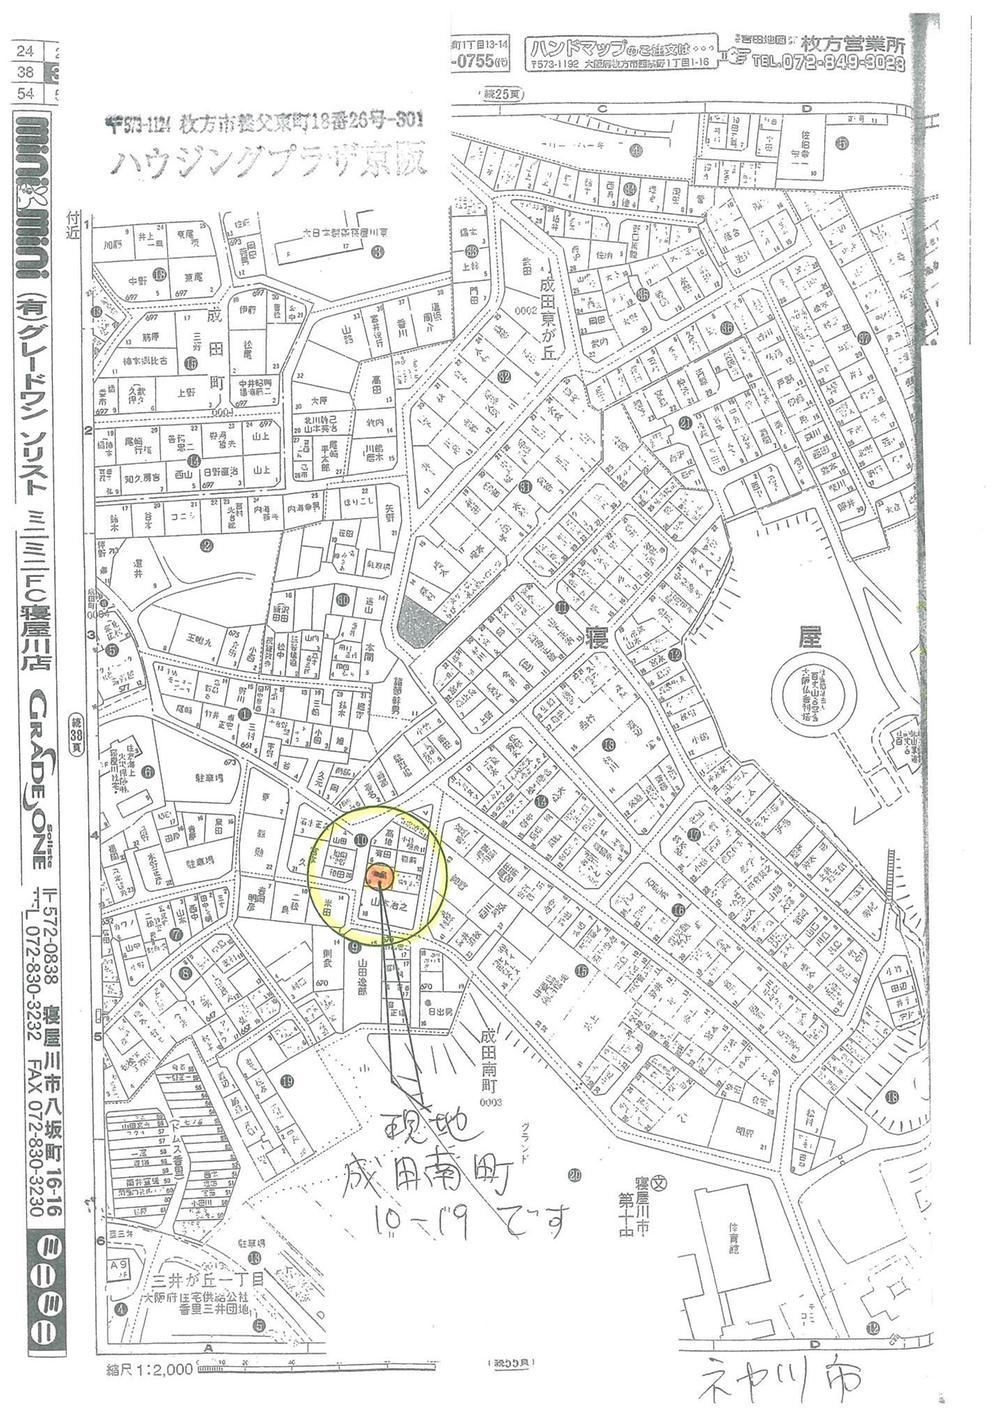 Local guide map. Naritaminami cho 10-19